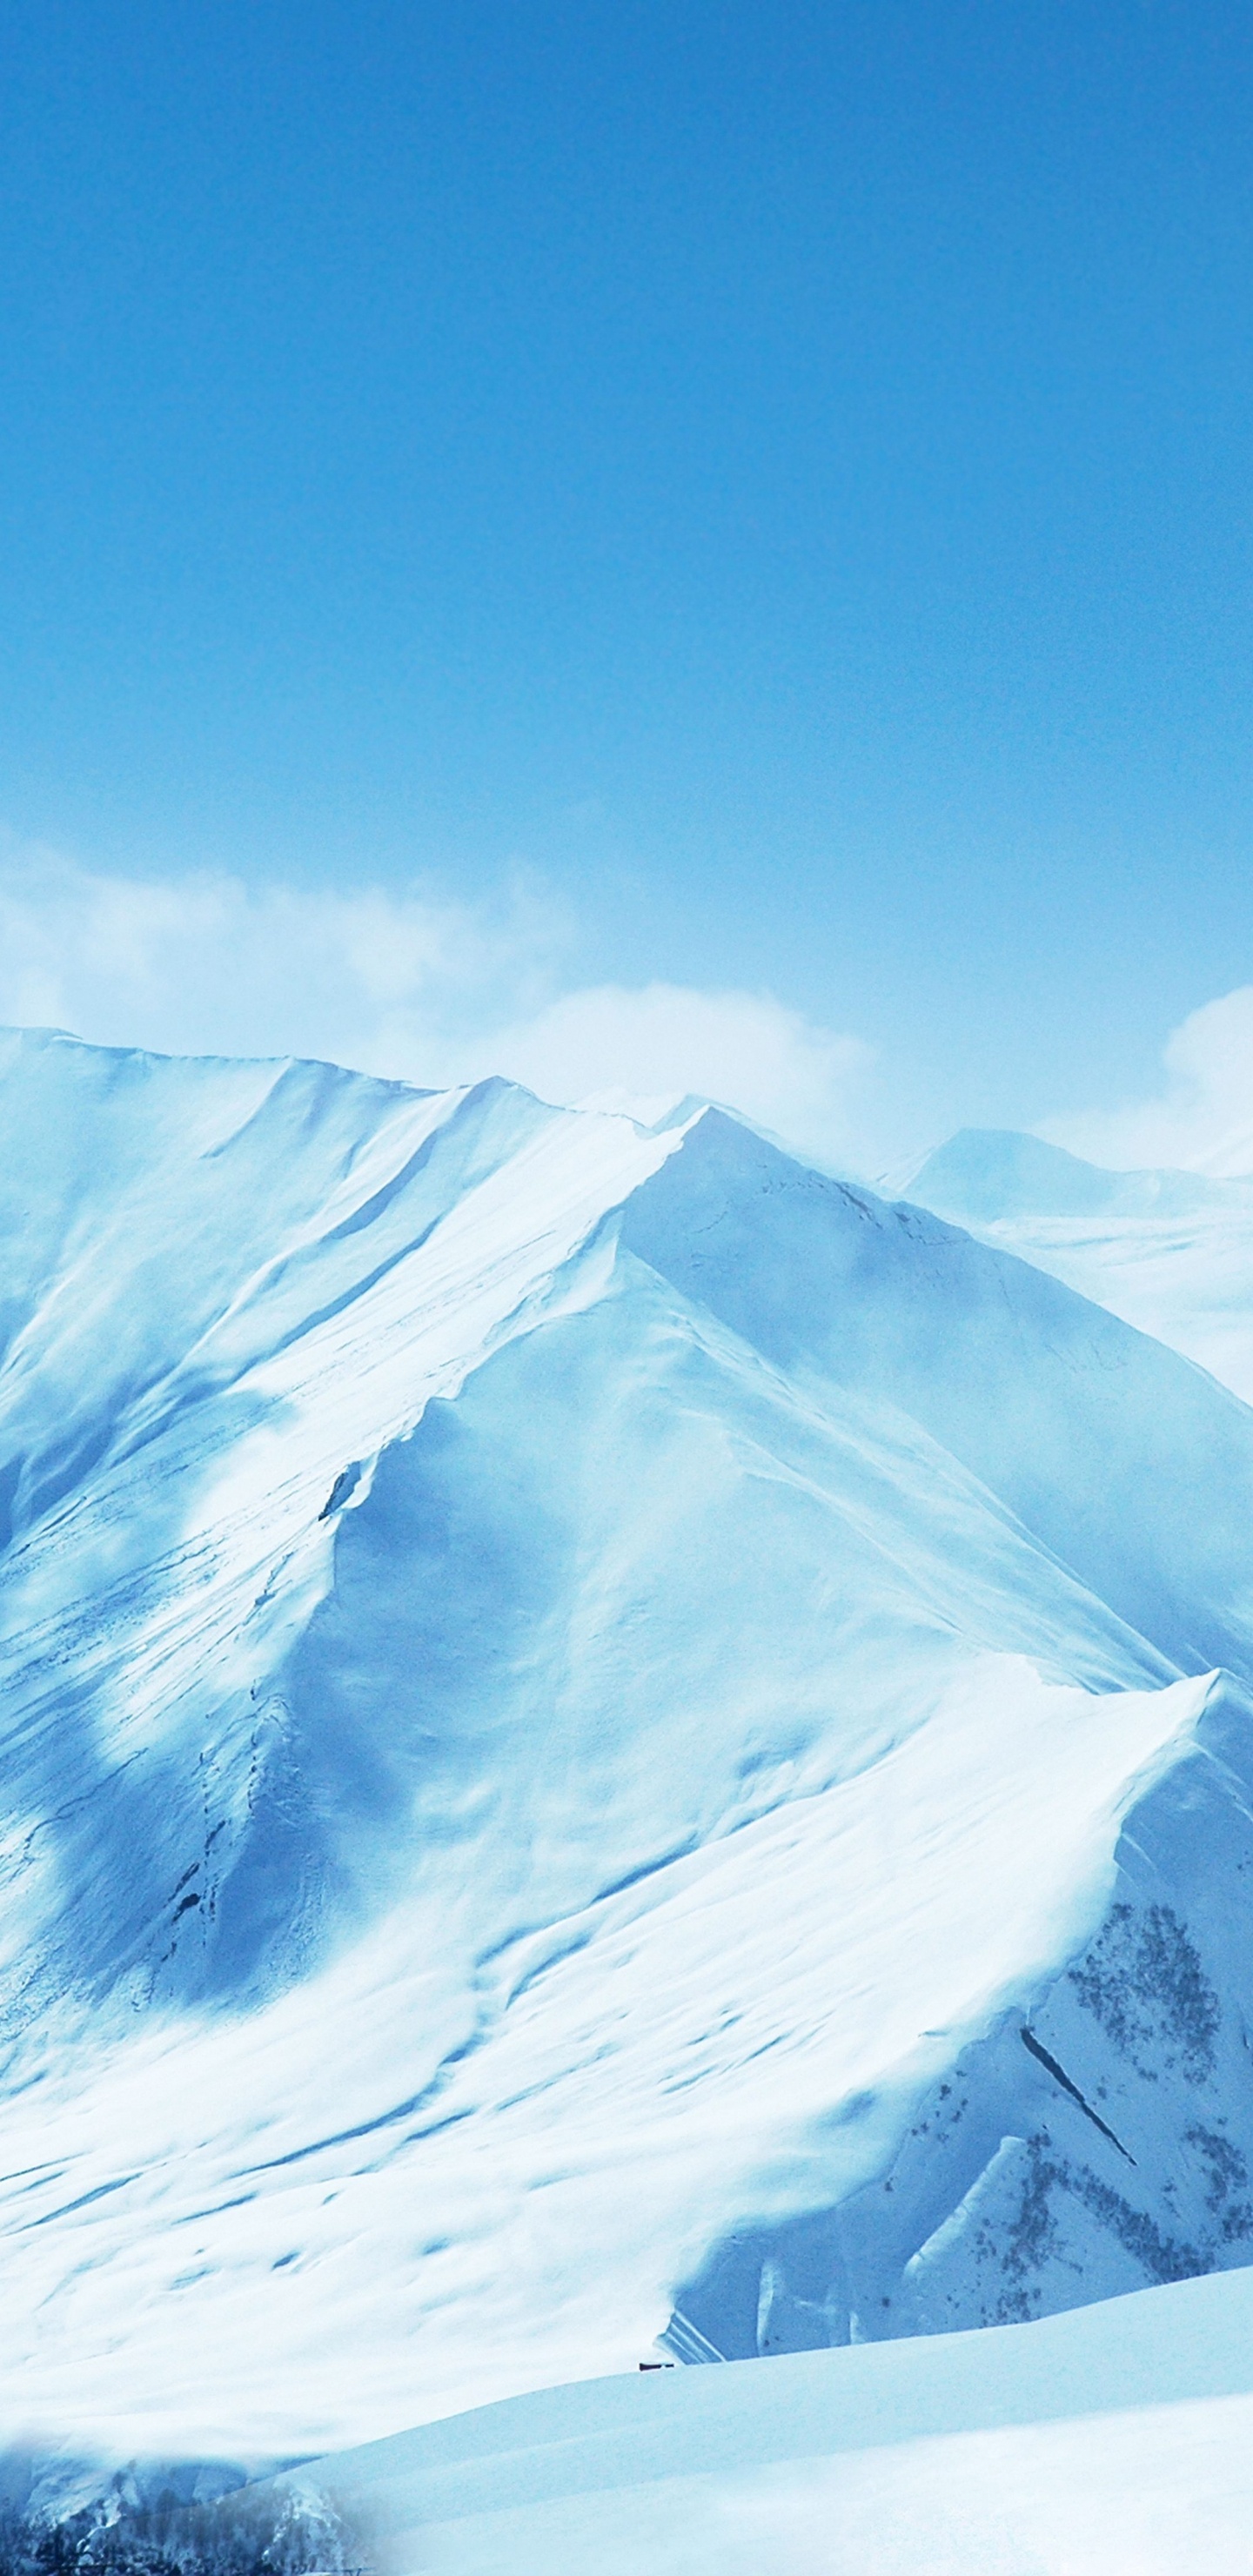 Montagne Couverte de Neige Sous Ciel Bleu. Wallpaper in 1440x2960 Resolution